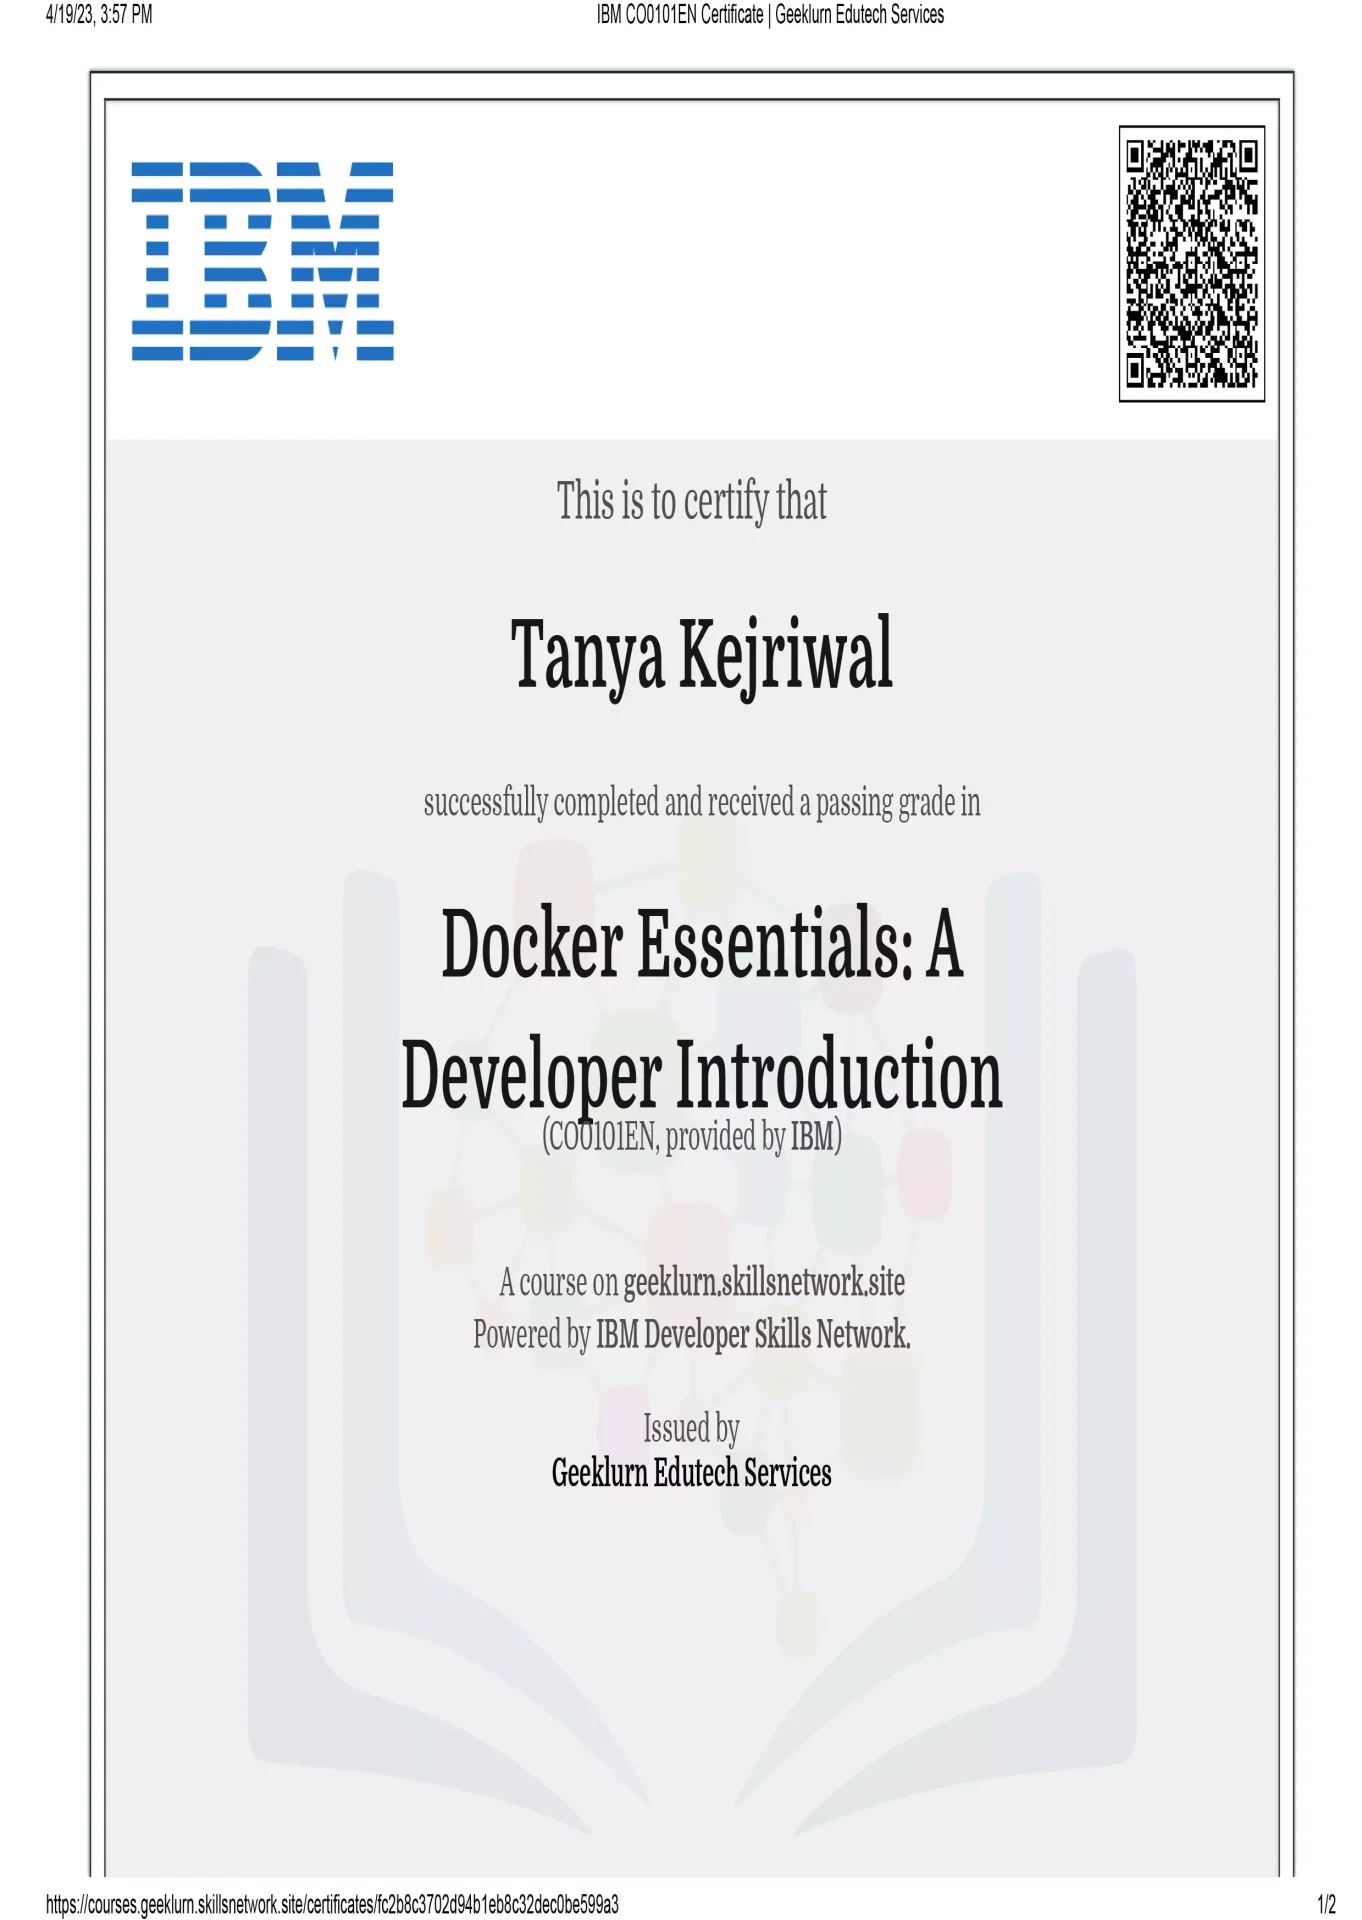 ibm-co0101en-certificate-geeklurn-edutech-services-1